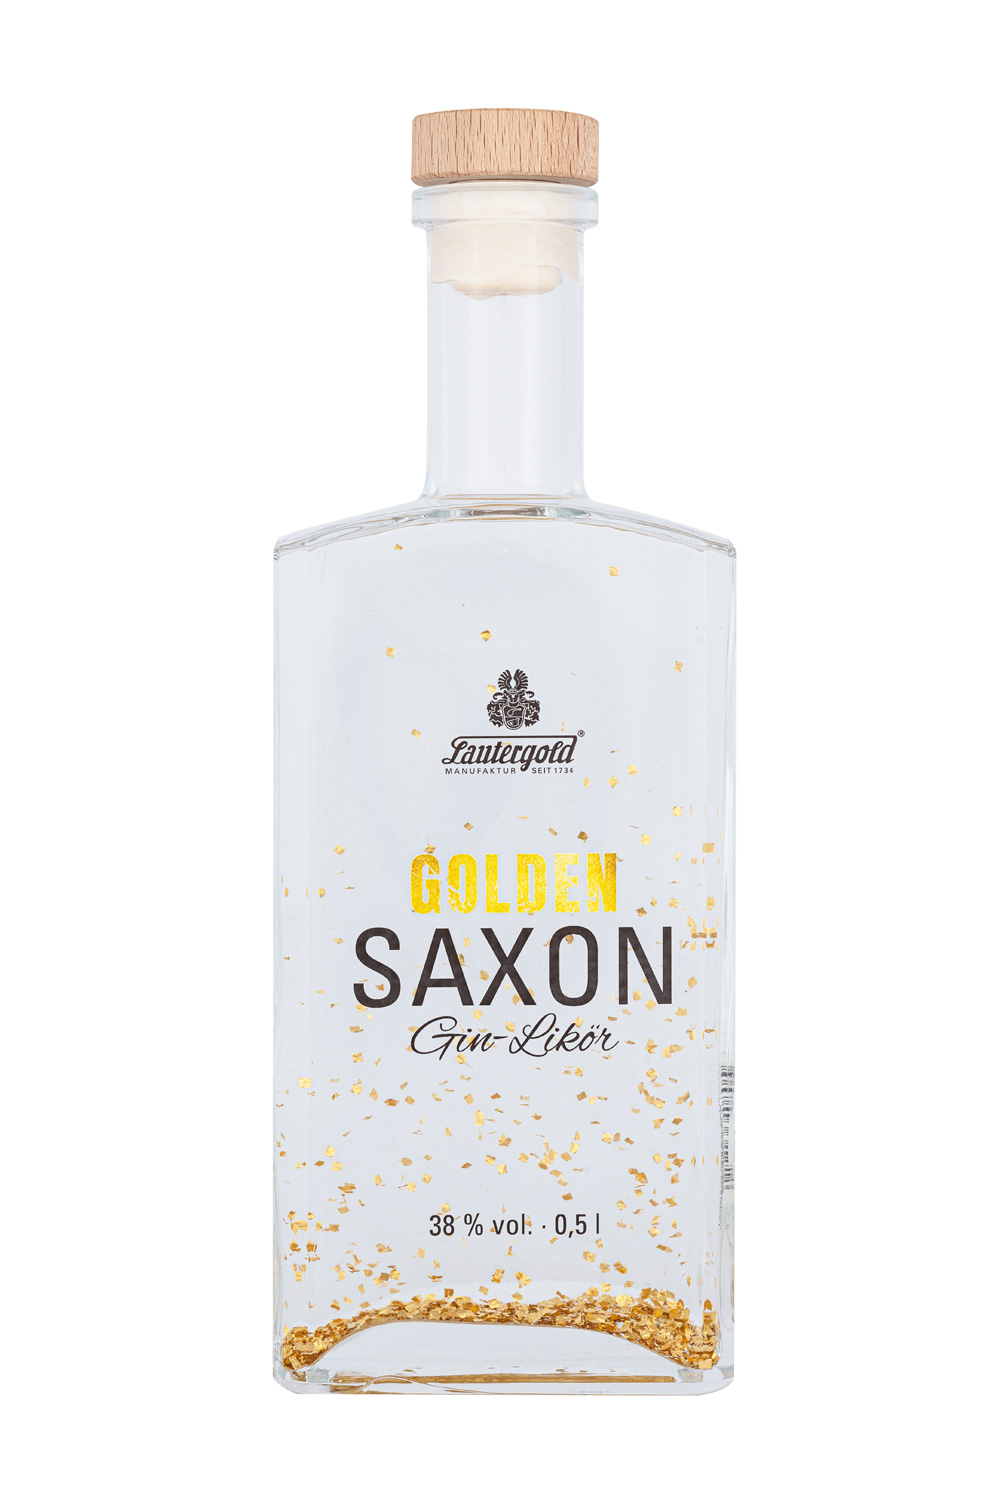 Golden Saxon Gin Likör